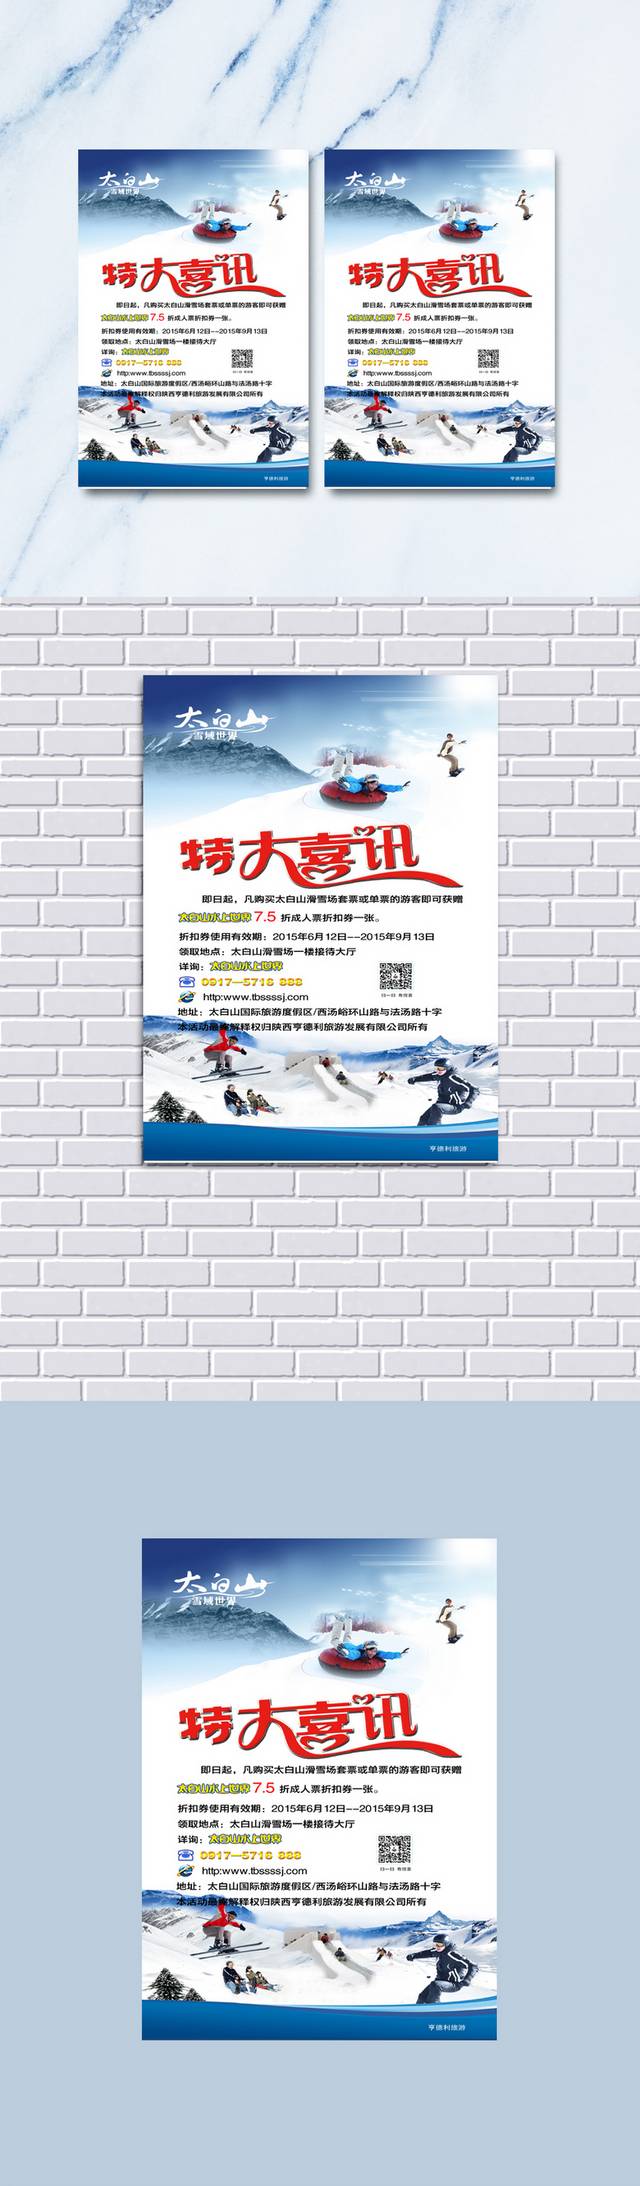 滑雪活动喜讯单页